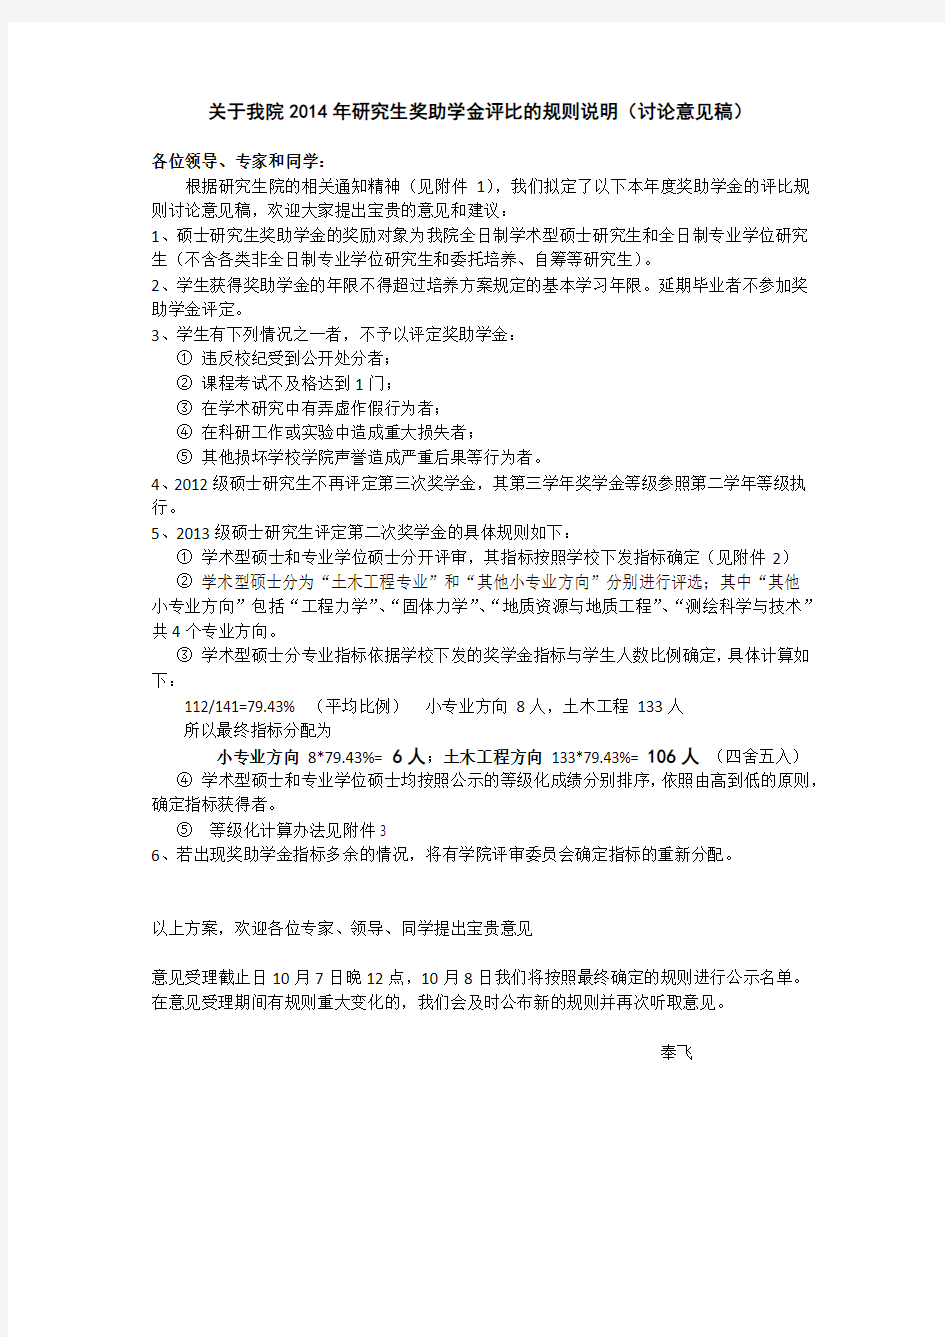 重庆大学土木工程学院研究生奖助学金评比的规则说明